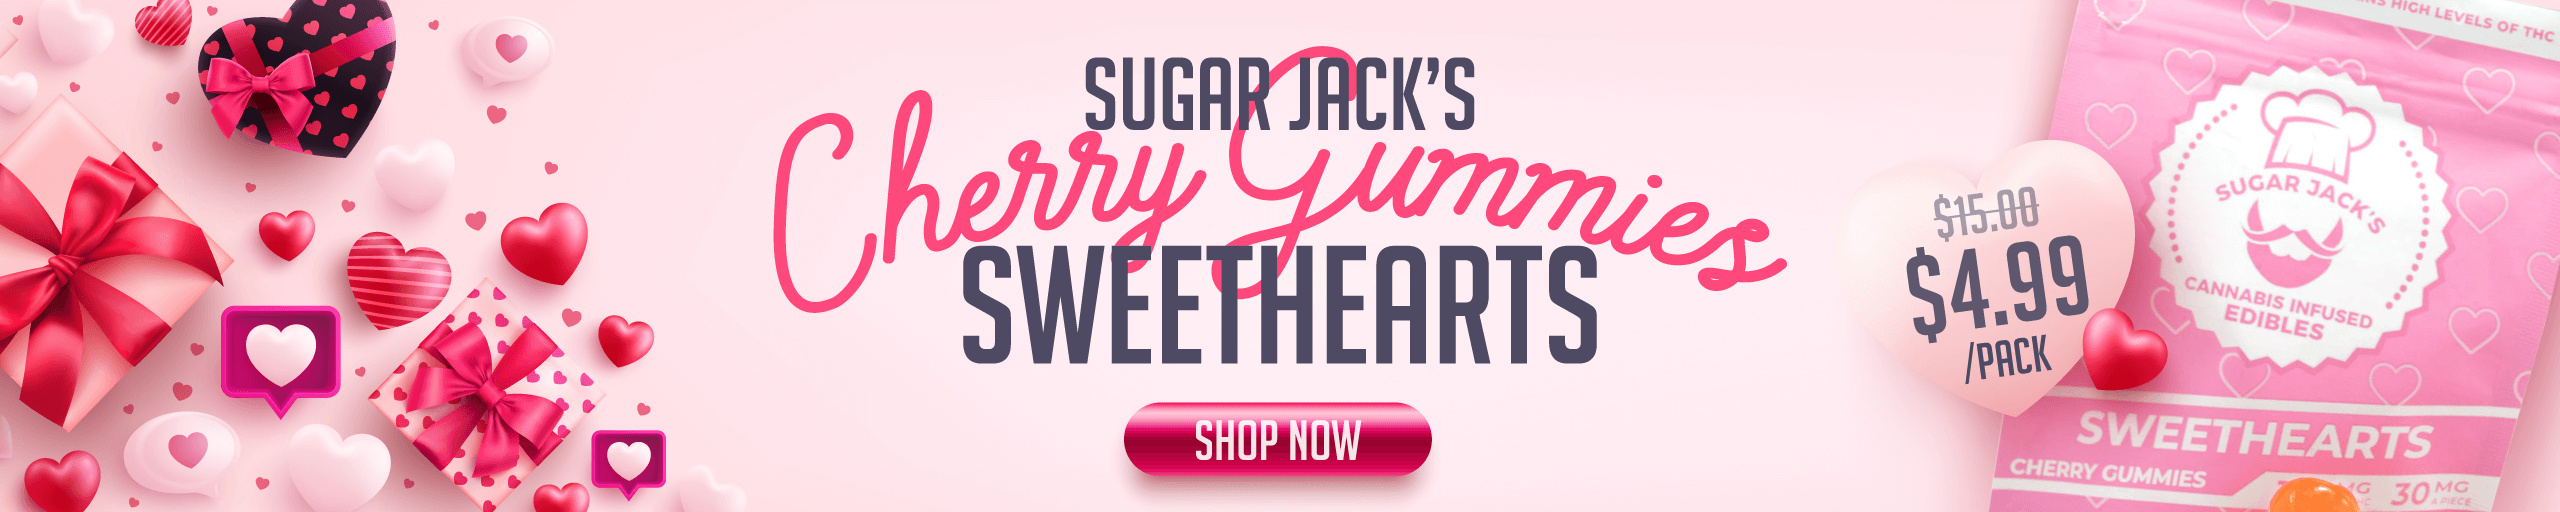 Sweethearts Web